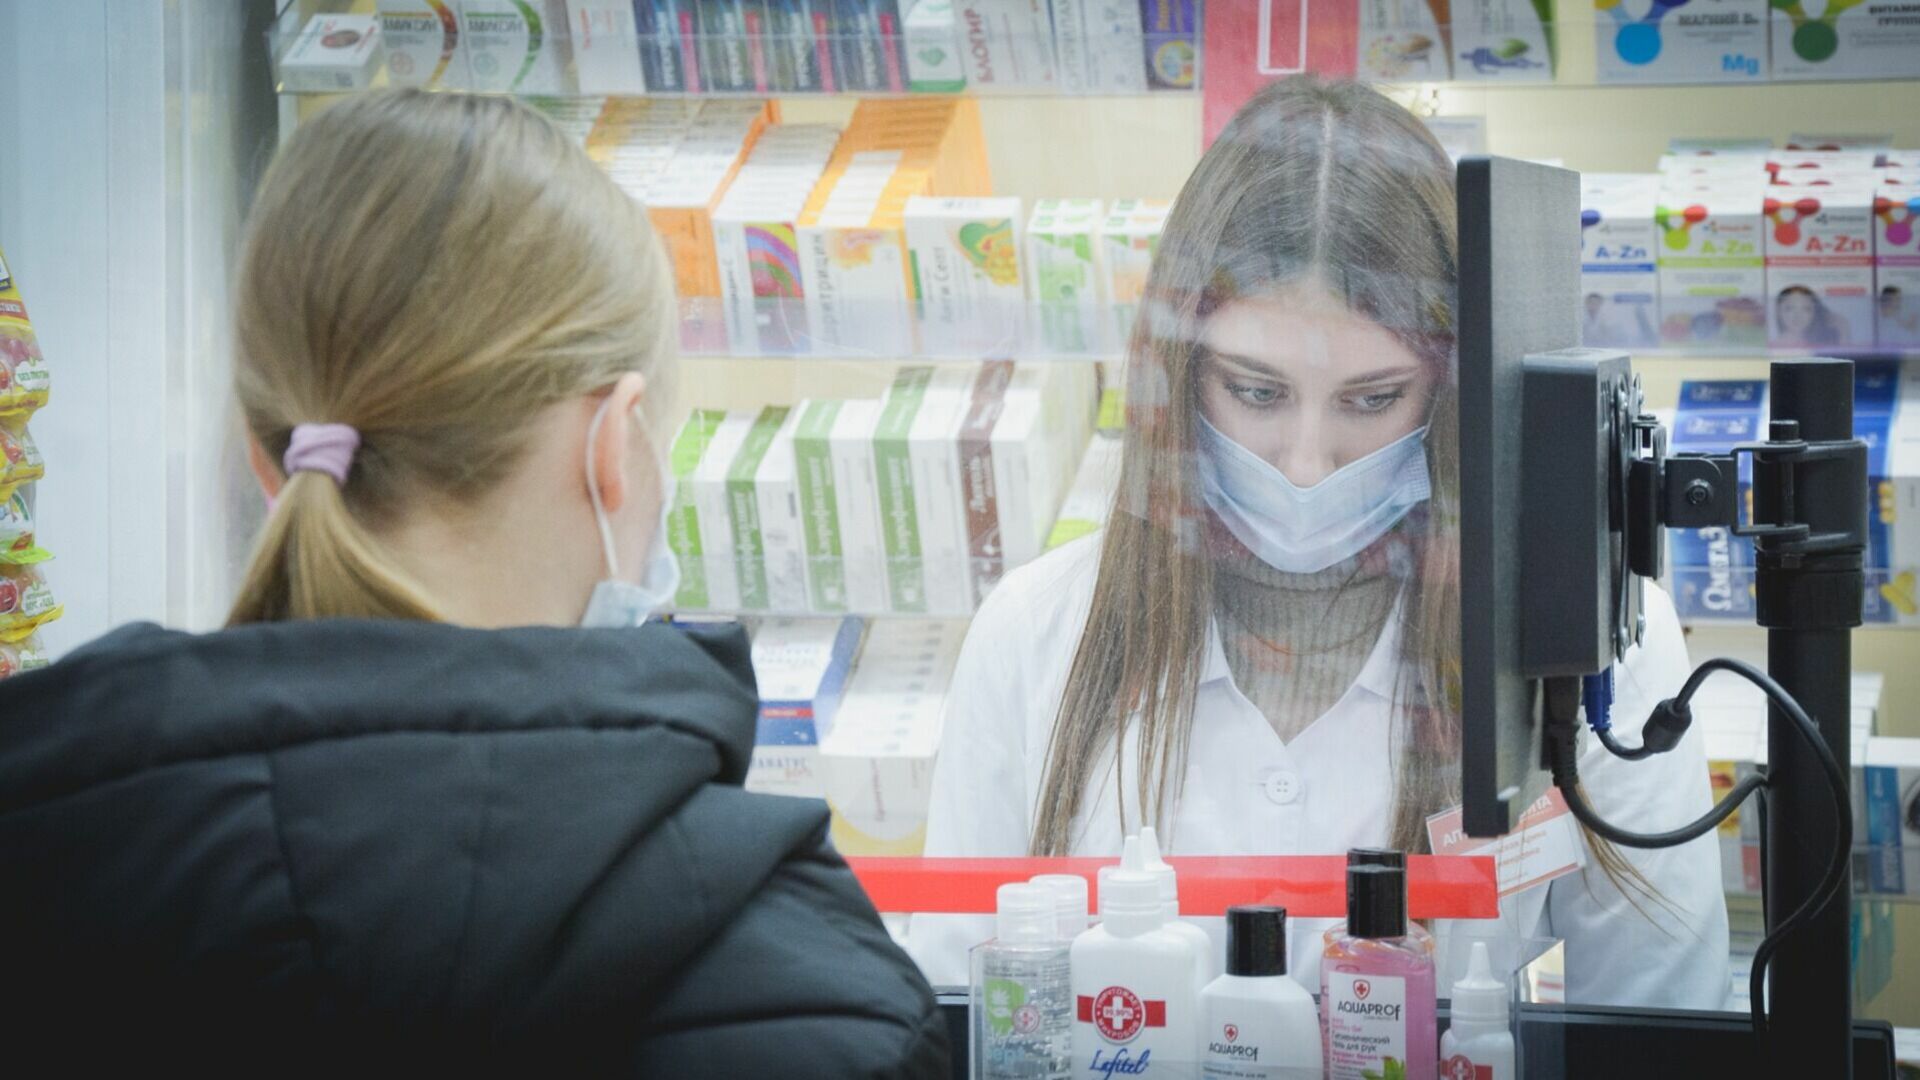 Расходы на лекарства свыше 3,9 тыс. рублей в месяц россияне считают неприемлемыми